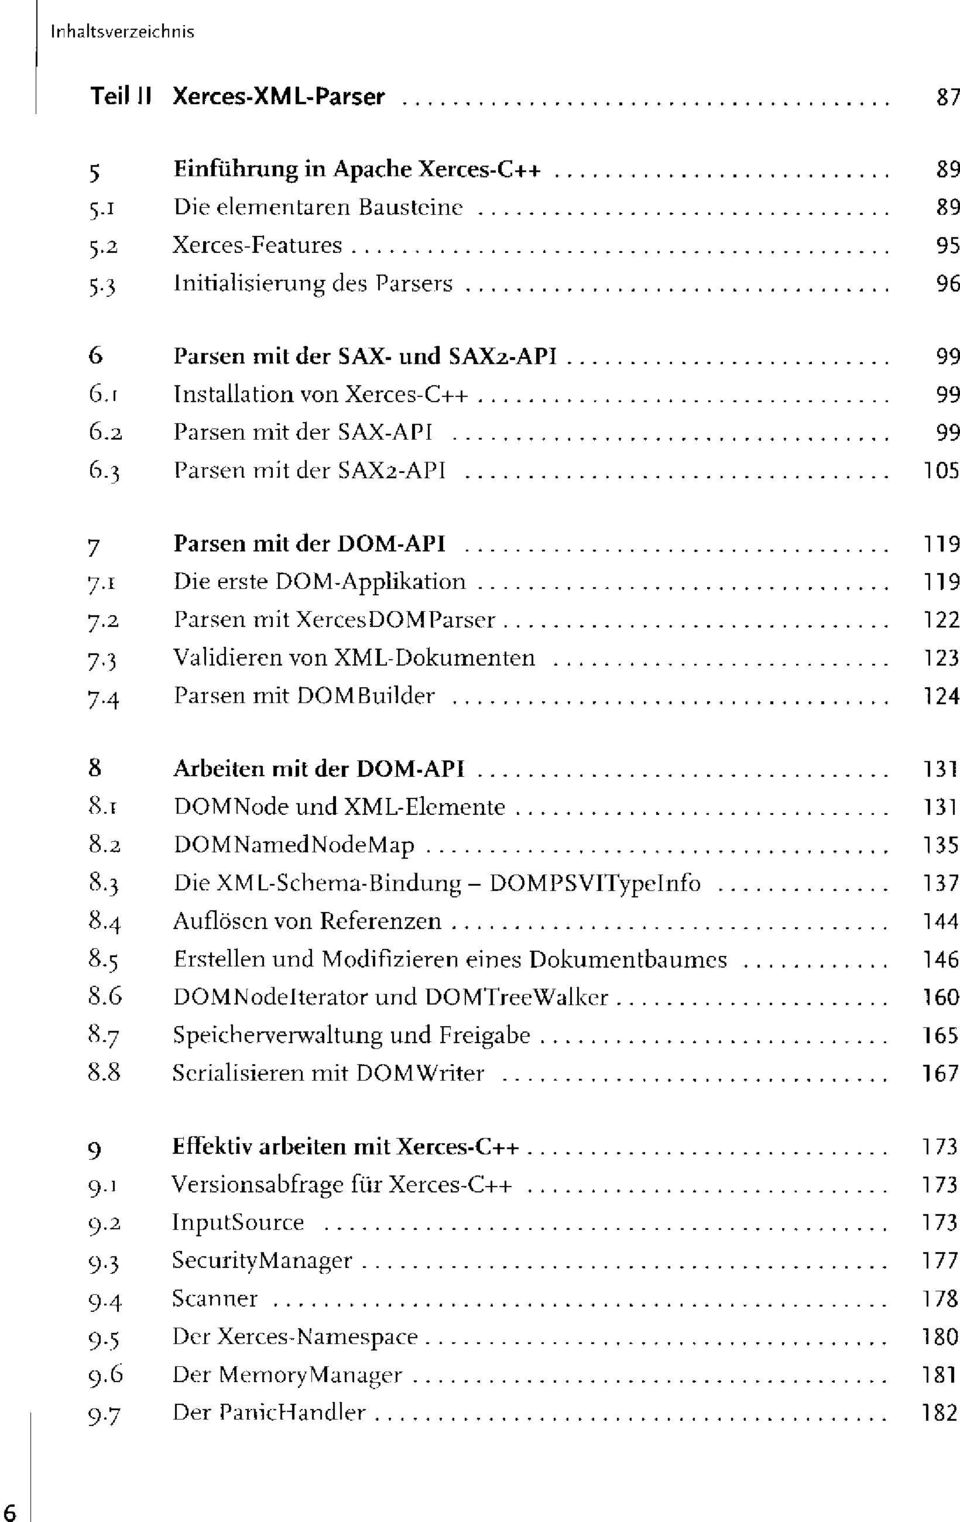 1 Die erste DOM-Applikation 119 7.2 Parsen mit XercesDOMParser 122 7.3 Validieren von XML-Dokumenten 123 7.4 Parsen mit DOMBuilder 124 8 Arbeiten mit der DOM-API 131 8.